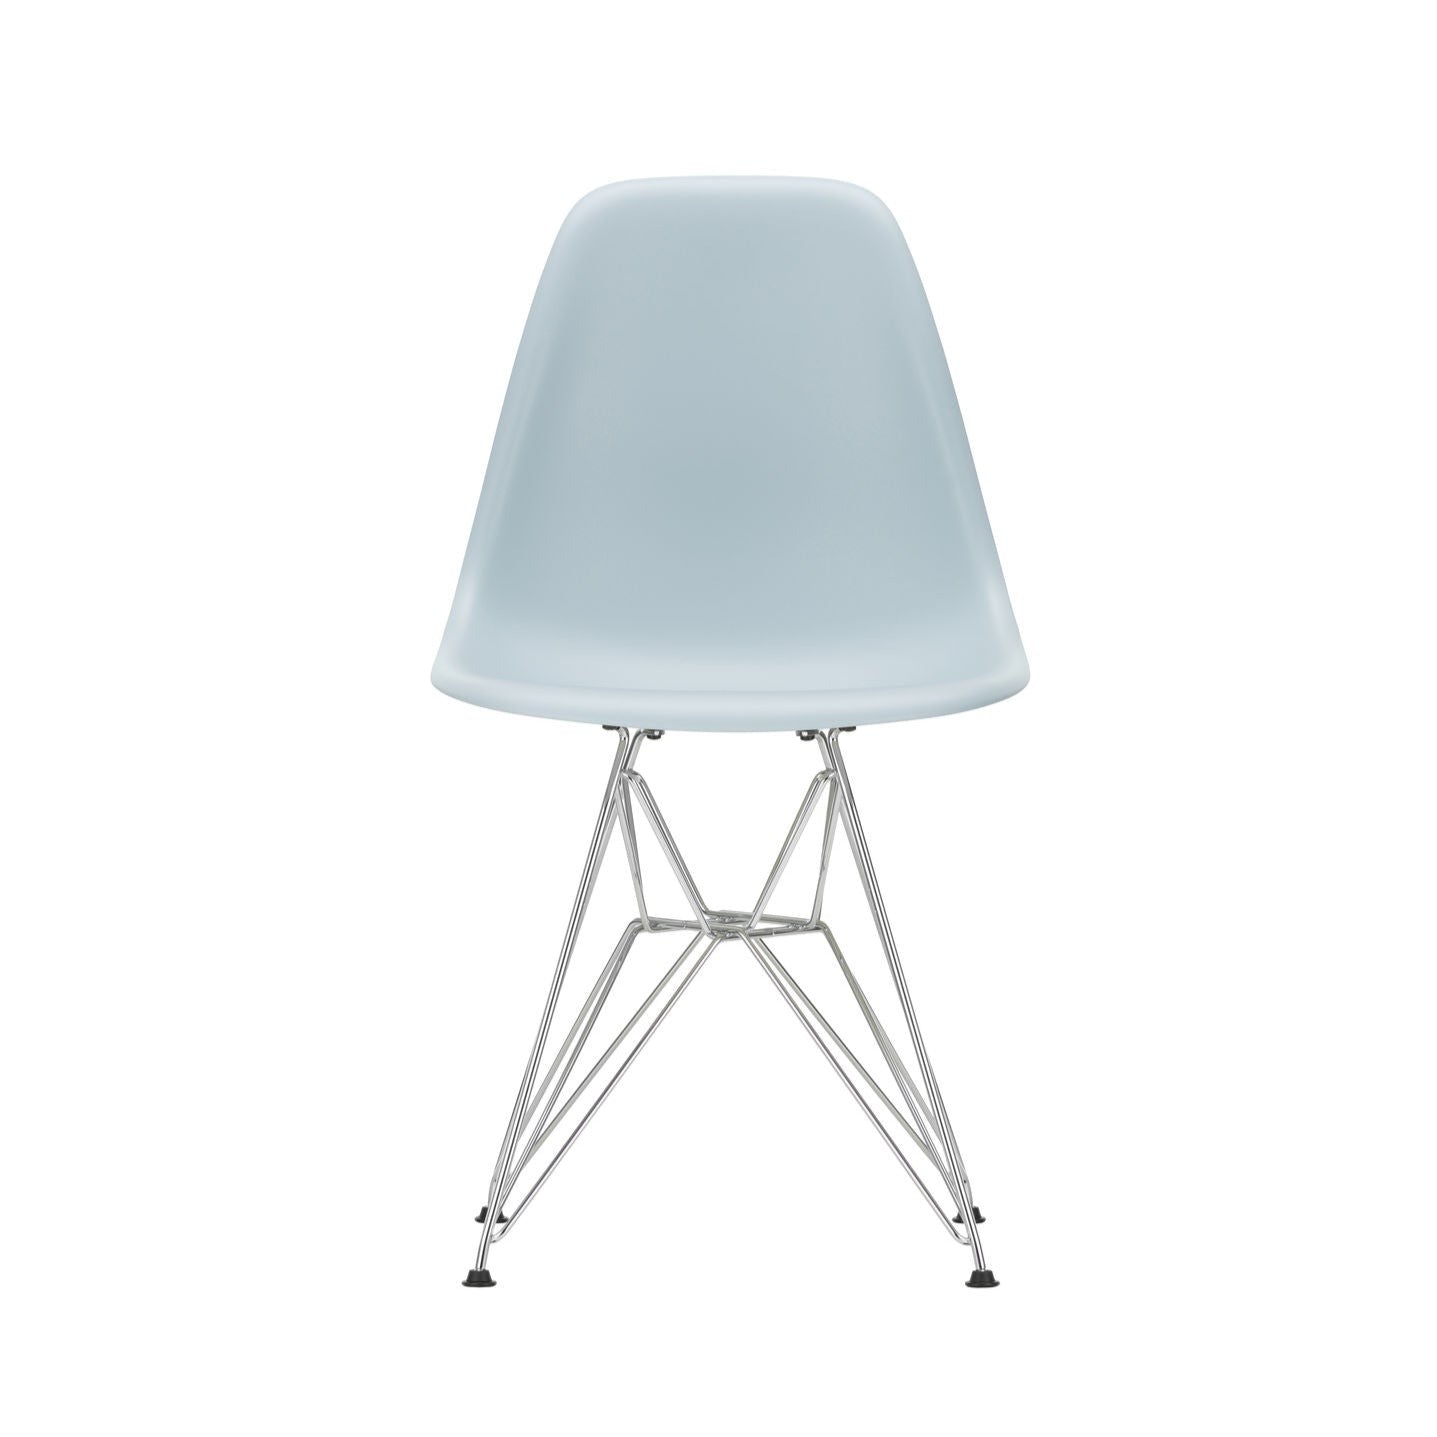 Spisestol Eames Plastic Side Chair RE DSR fra Vitra med kromfarget understell og gråblått sete (23 Ice grey).